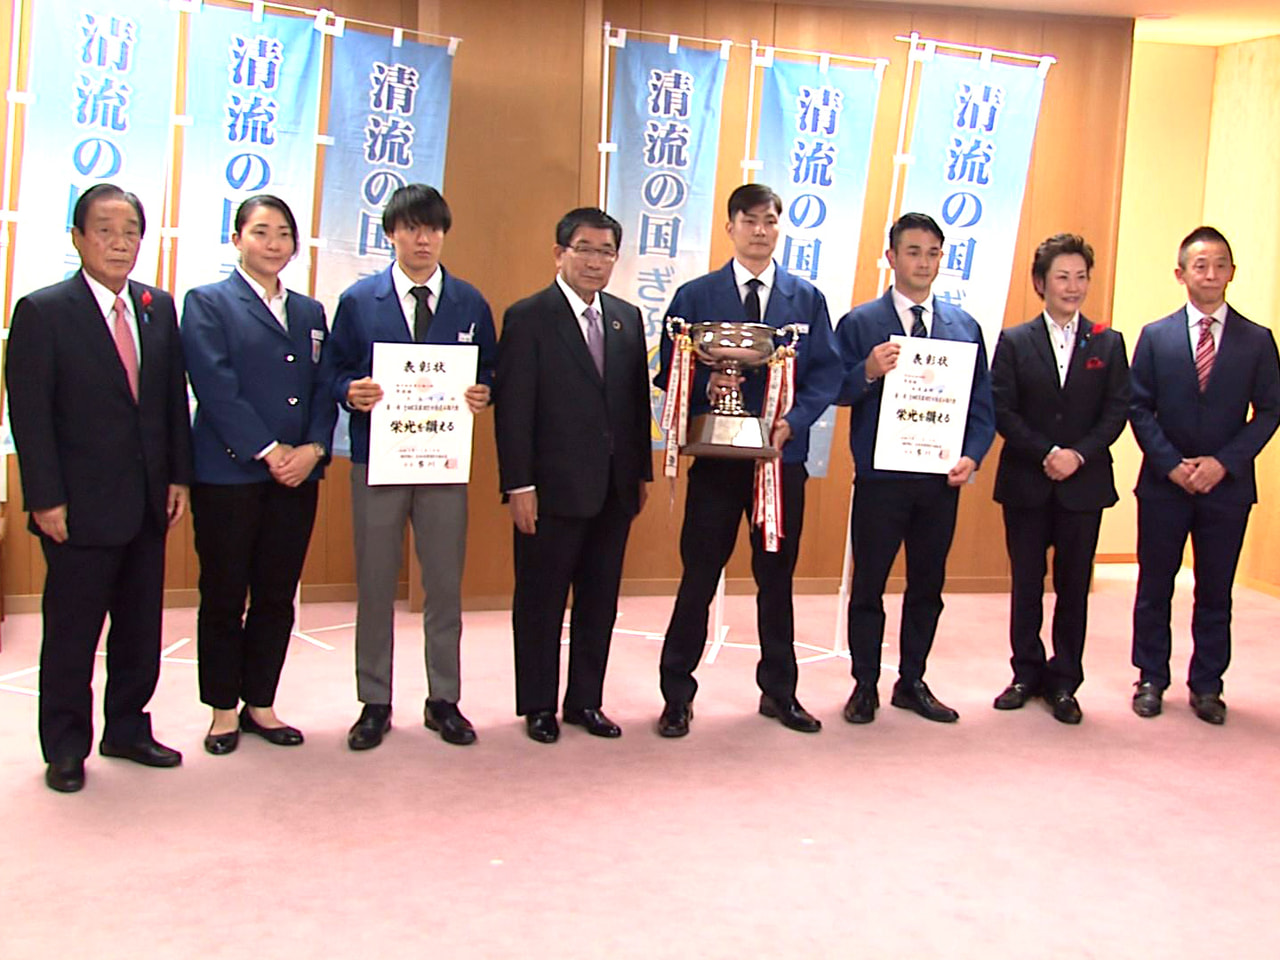 １１月行われた全日本実業団空手道選手権の個人男子組手で優勝した、西濃運輸空手道部...